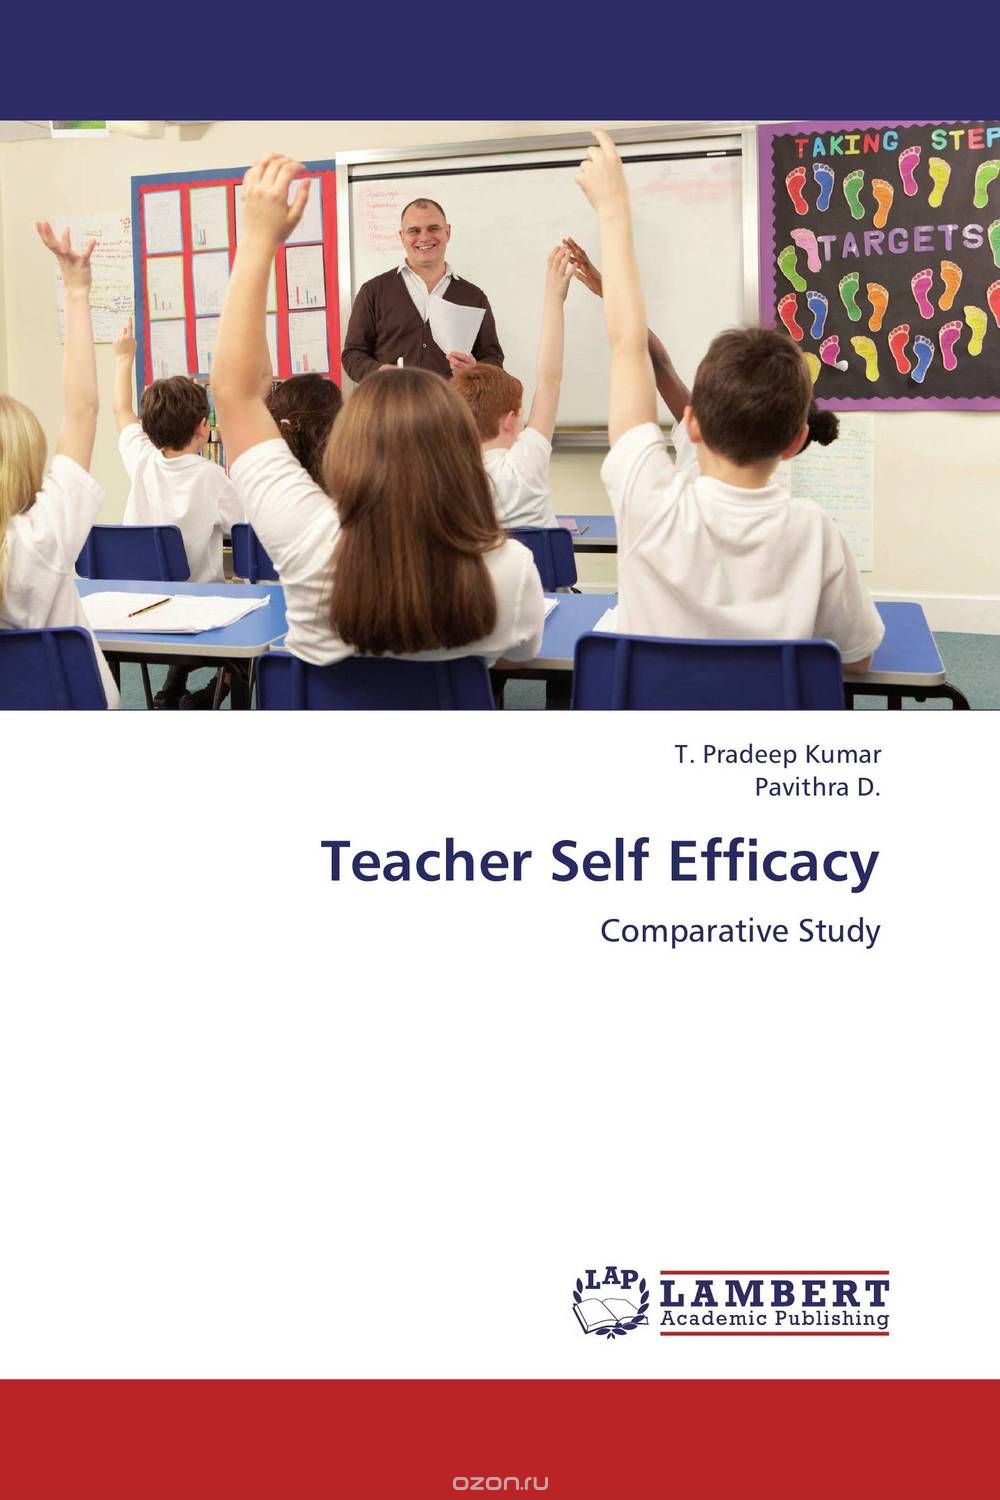 Скачать книгу "Teacher Self Efficacy"